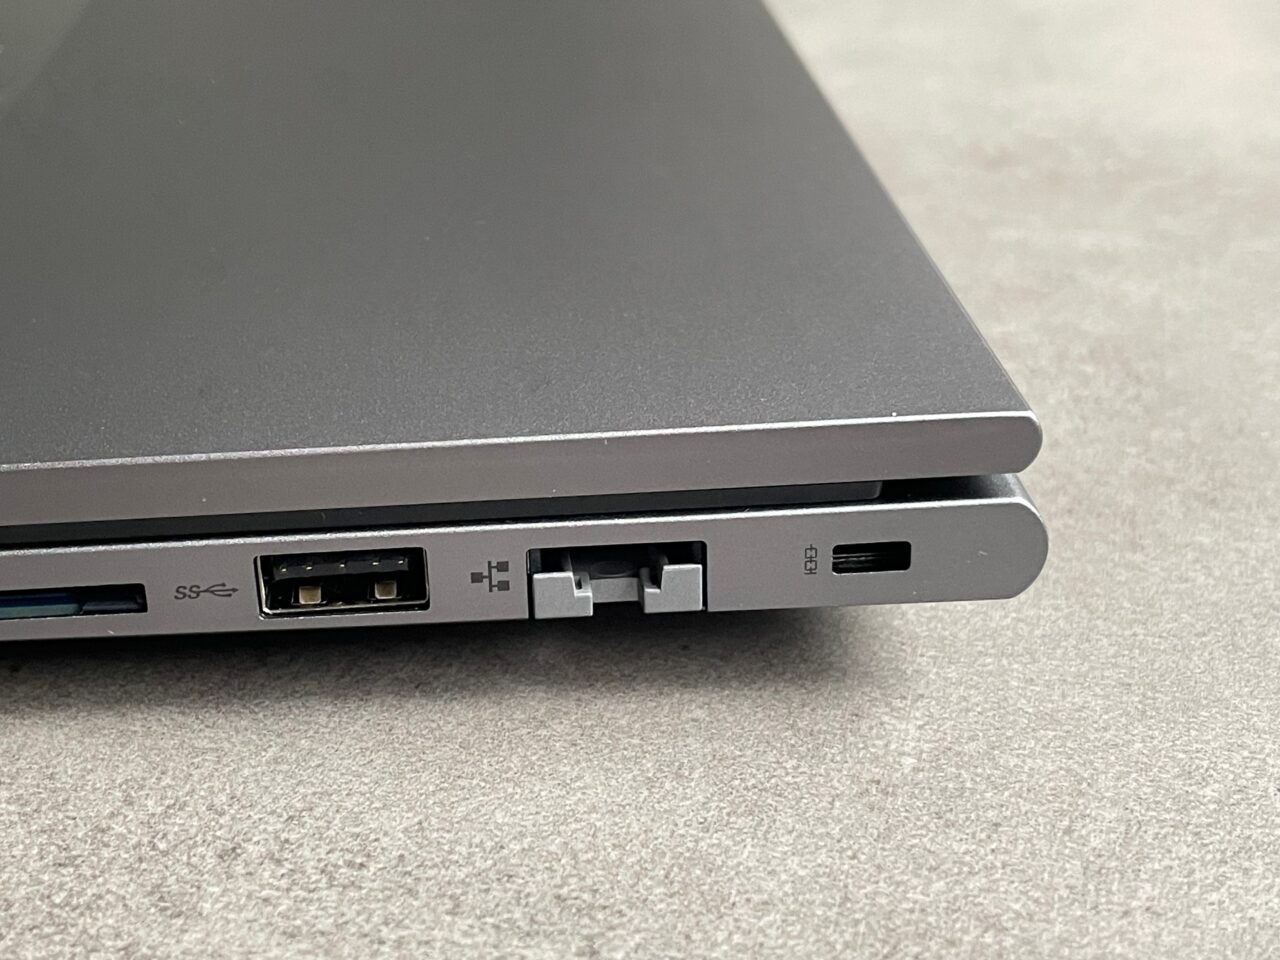 Część boczna laptopa z widocznymi portami: USB, HDMI, karta SD oraz złączem zasilania.